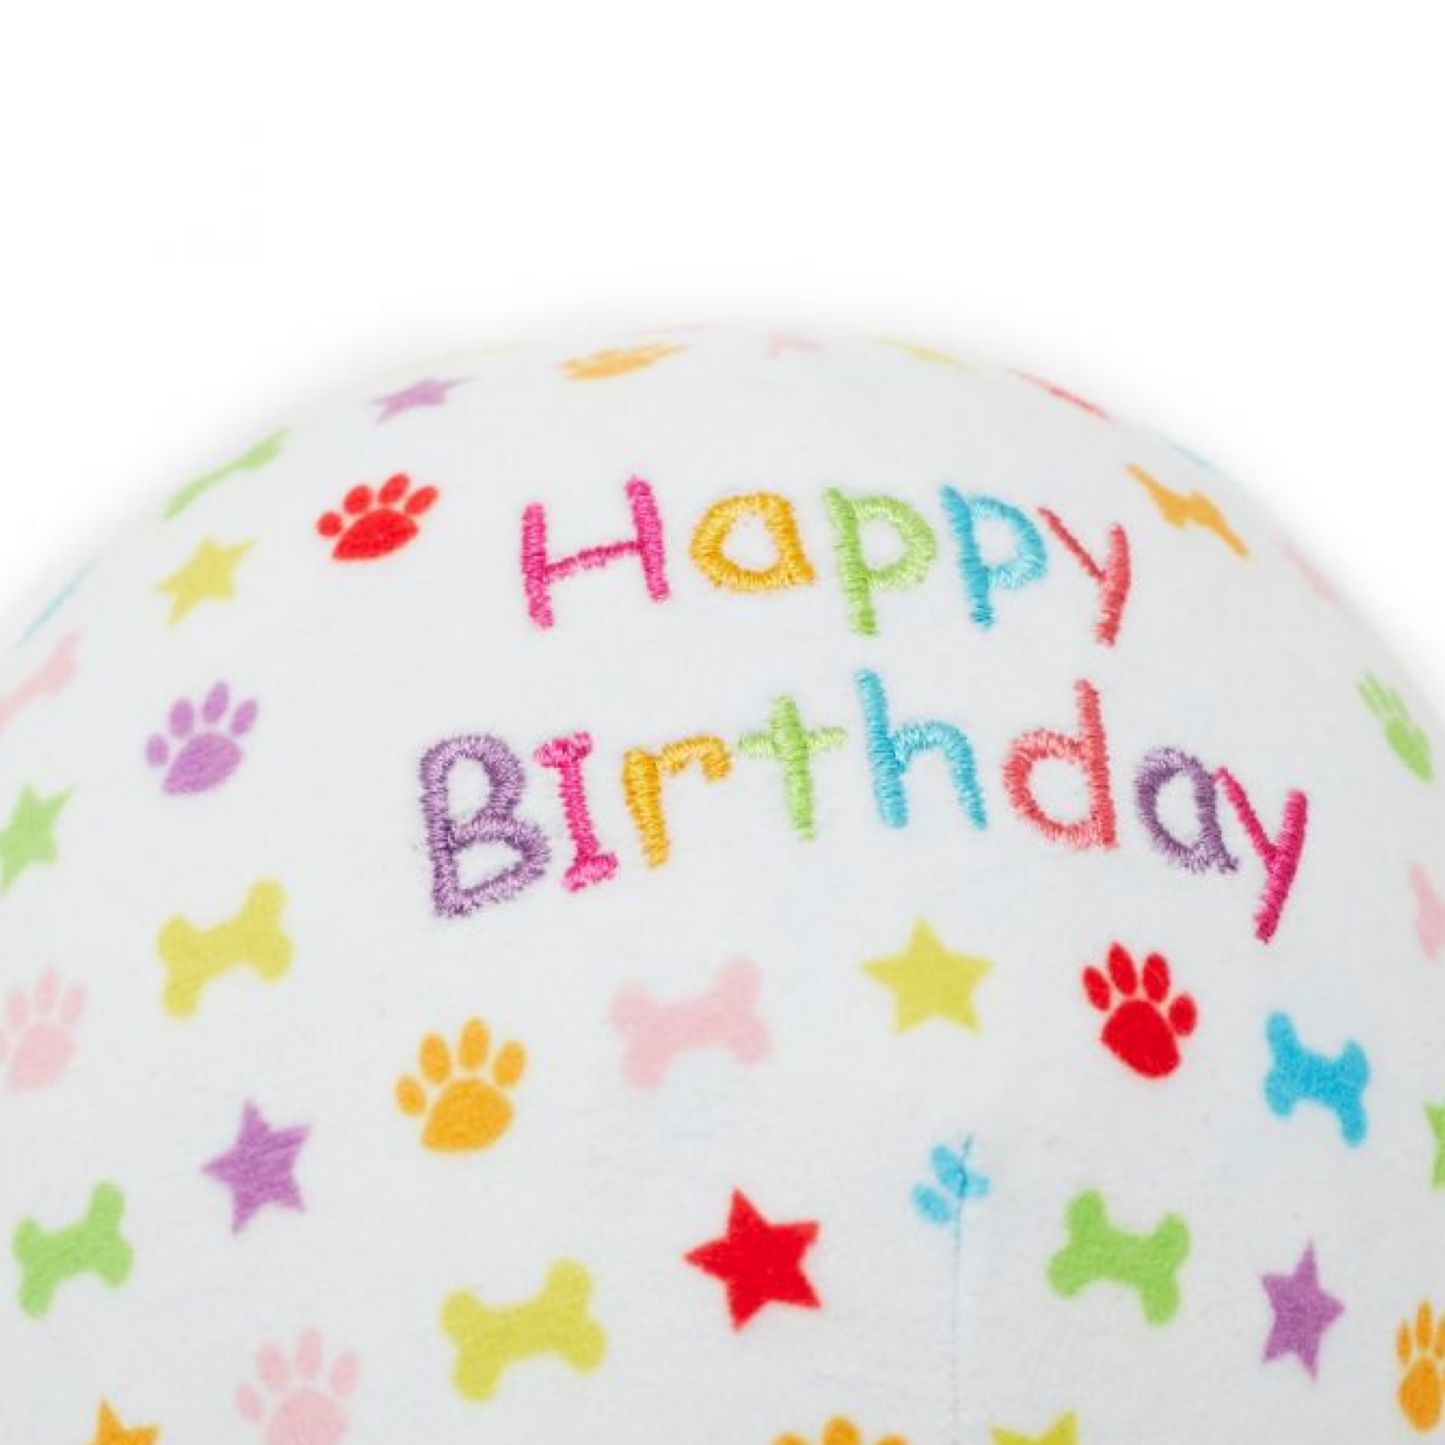 Pet London Birthday Balloon